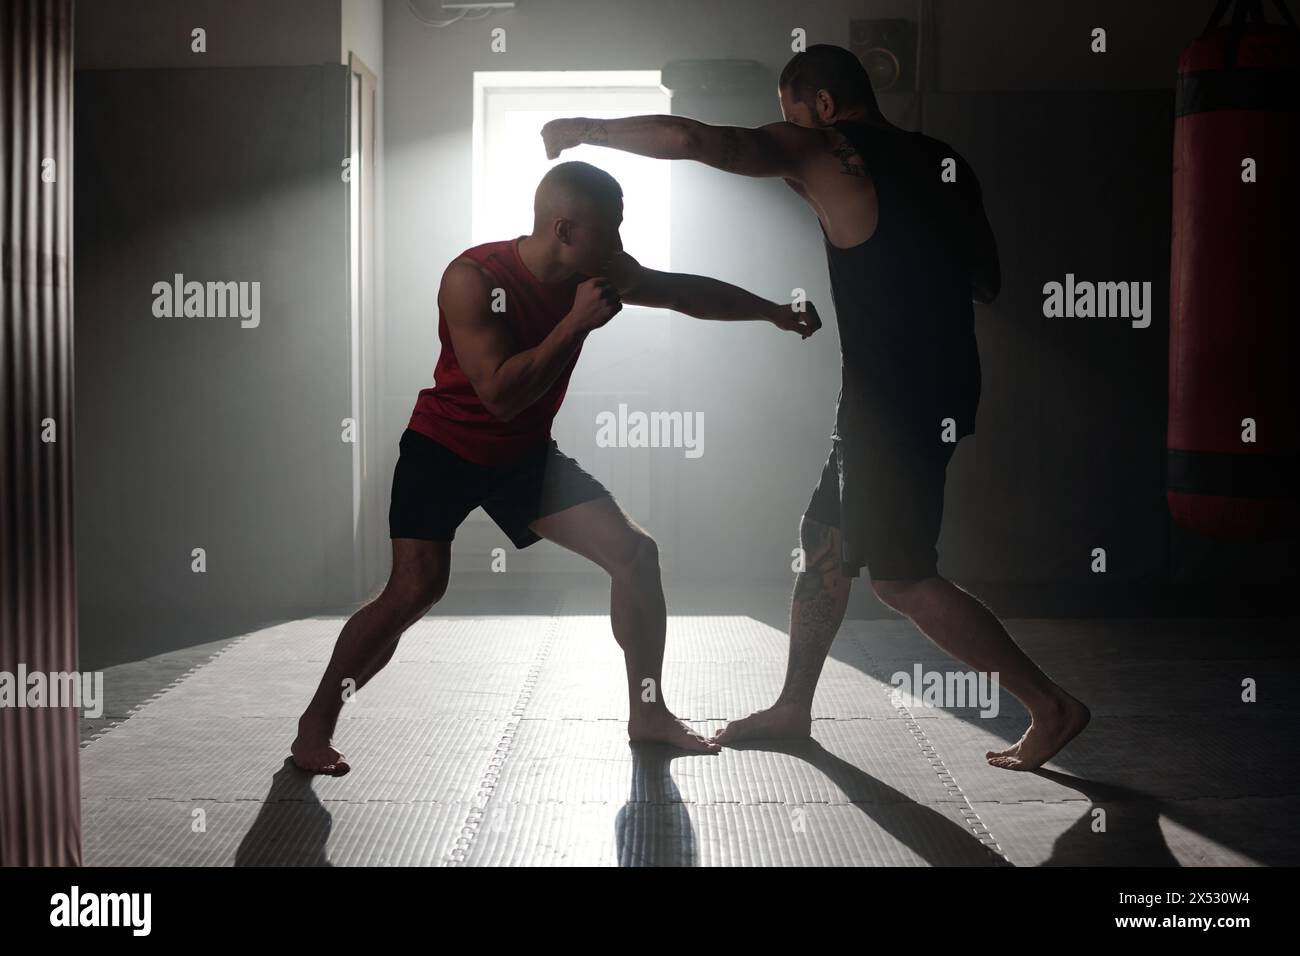 Hintergrundbeleuchtete Umrisse von zwei Boxern in Sportbekleidung, die im Fitnessstudio vor einander stehen und grundlegende Kicks und Boxtechniken üben Stockfoto